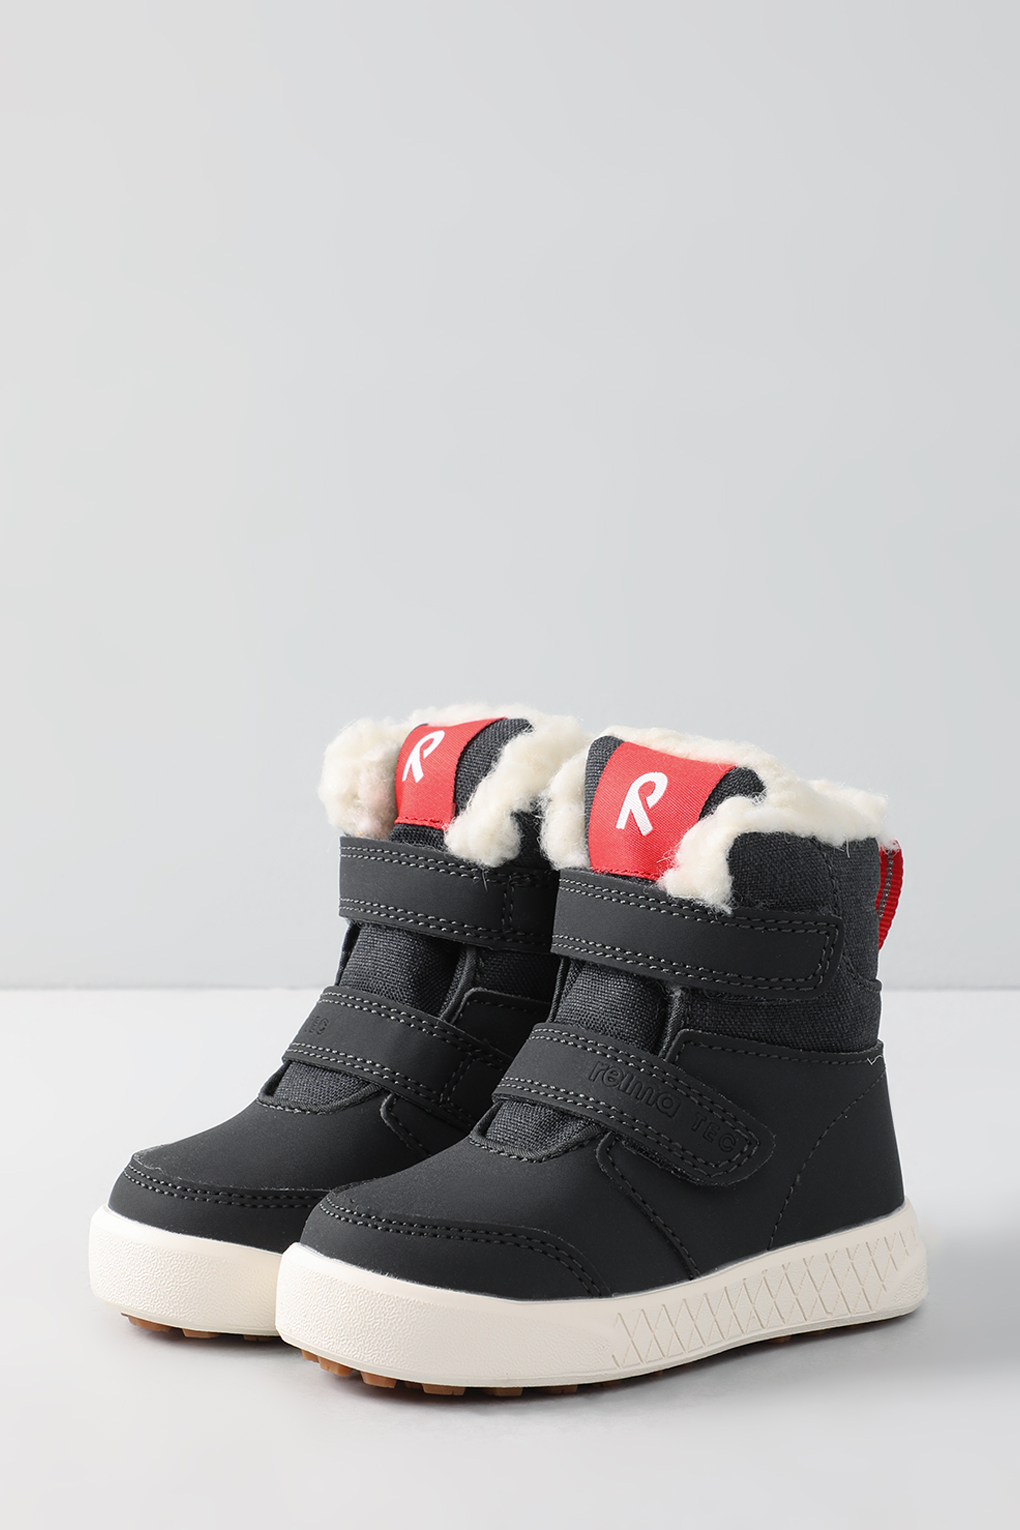 Ботинки Reima 5400030R, чёрный, 32 ботинки лыжные winter star classic nn75 р 44 чёрный лого белый